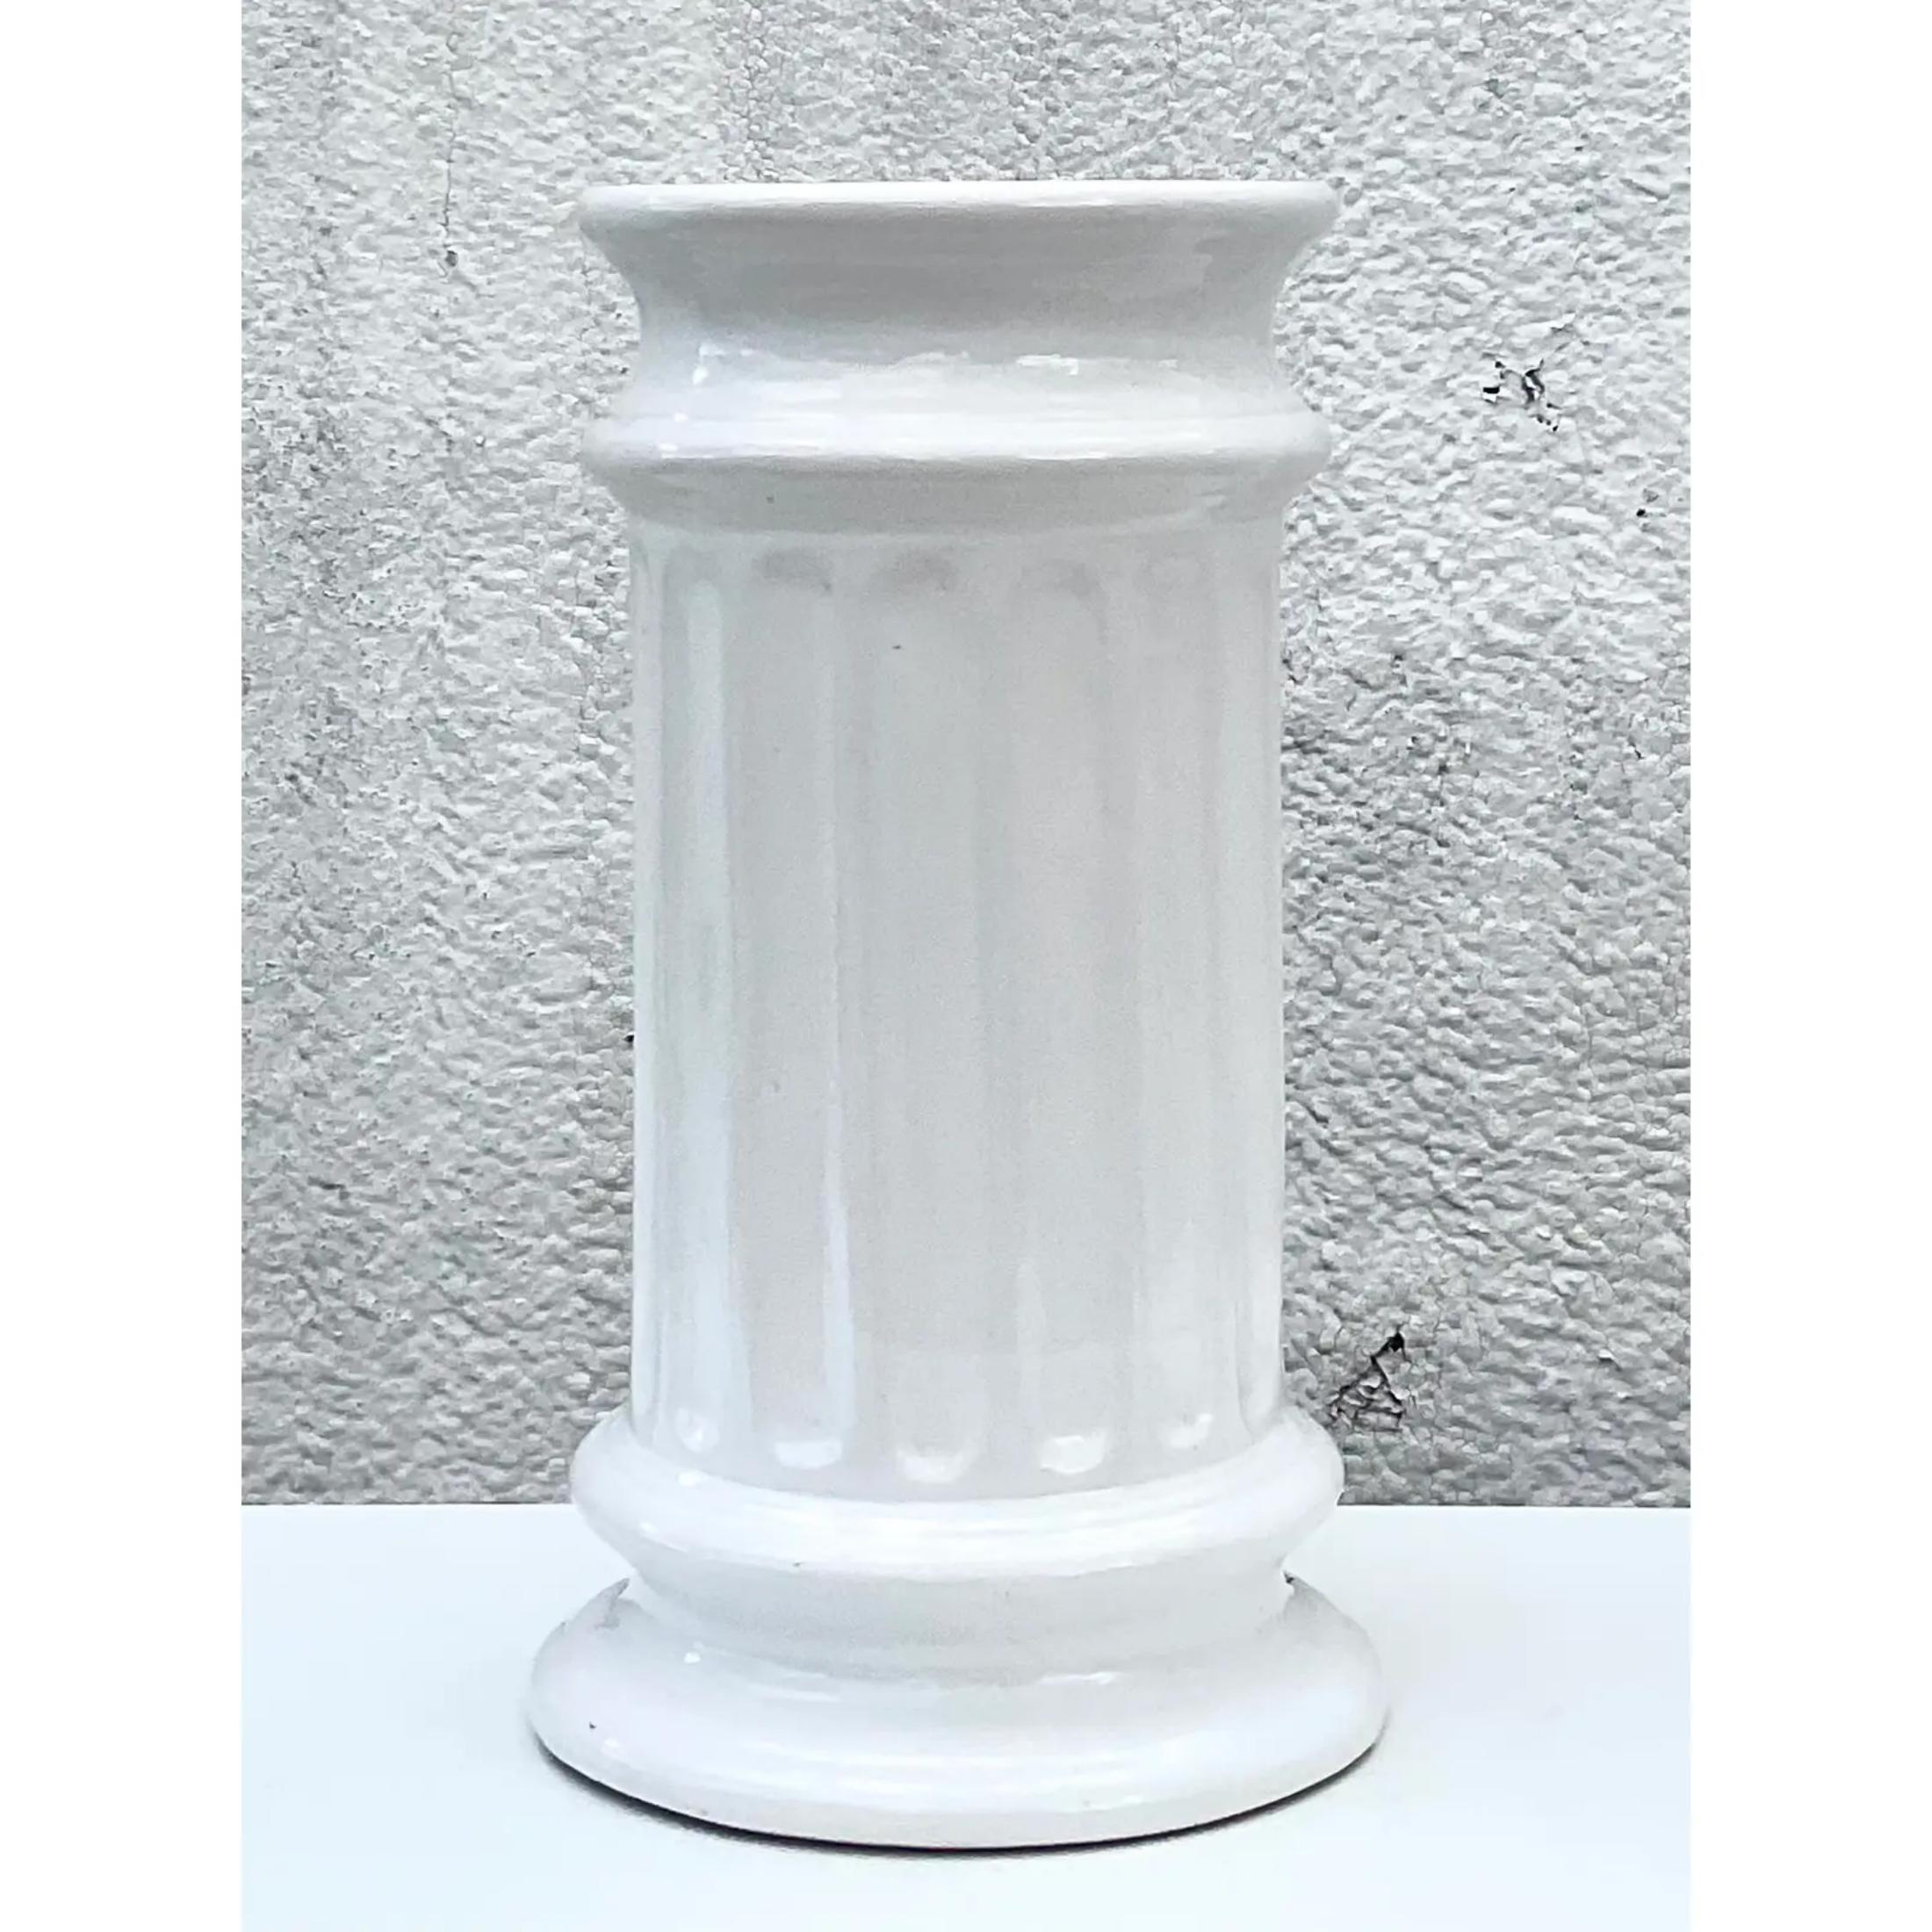 Fantastischer weißer Schirmständer im Vintage-Stil. Schöne glasierte Keramik in schickem Säulendesign. Hergestellt in Portugal. Erworben aus einem Nachlass in Palm Beach